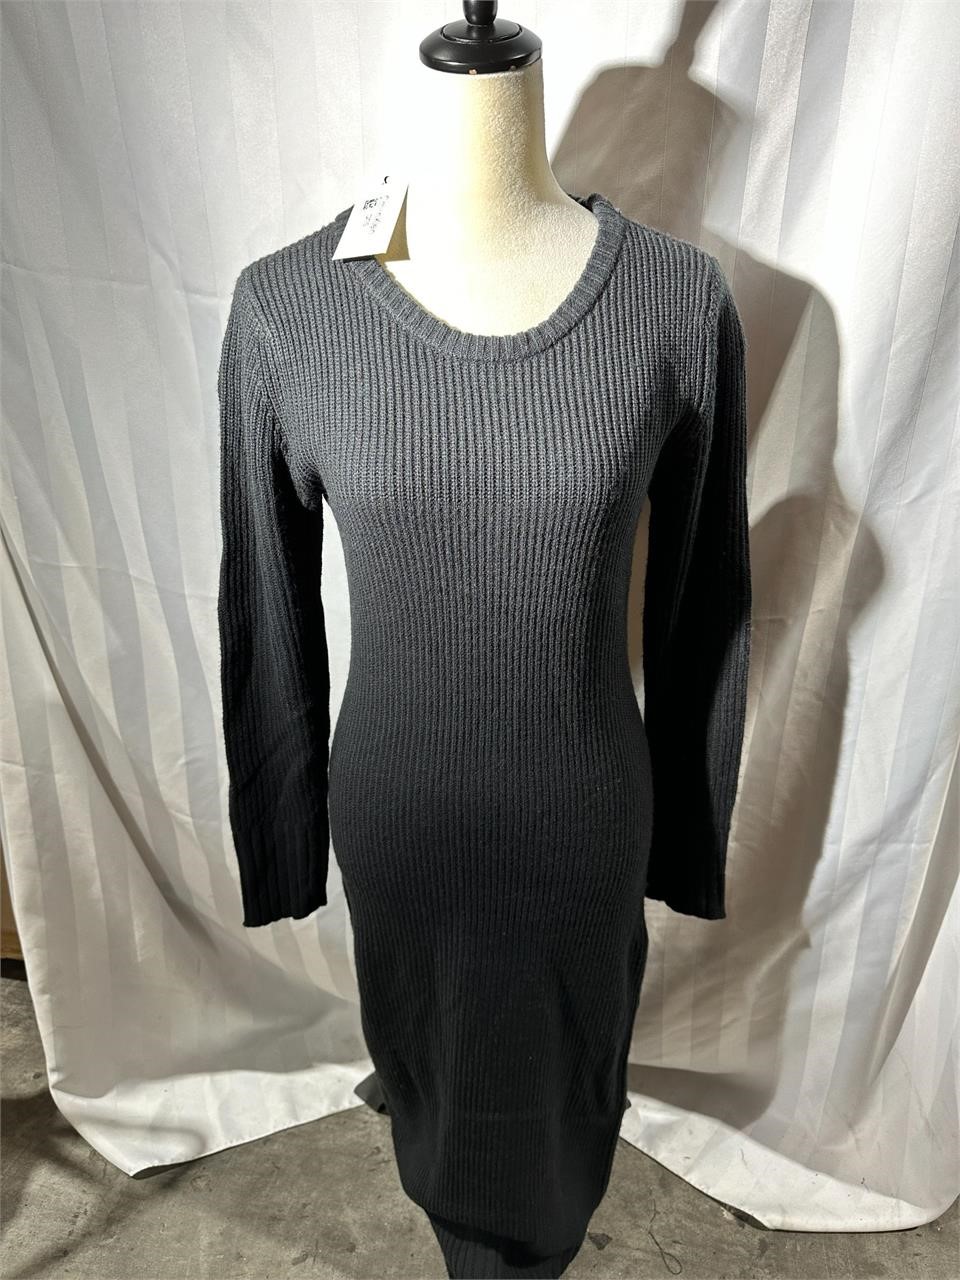 New Calvin Klein sz M black knit dress